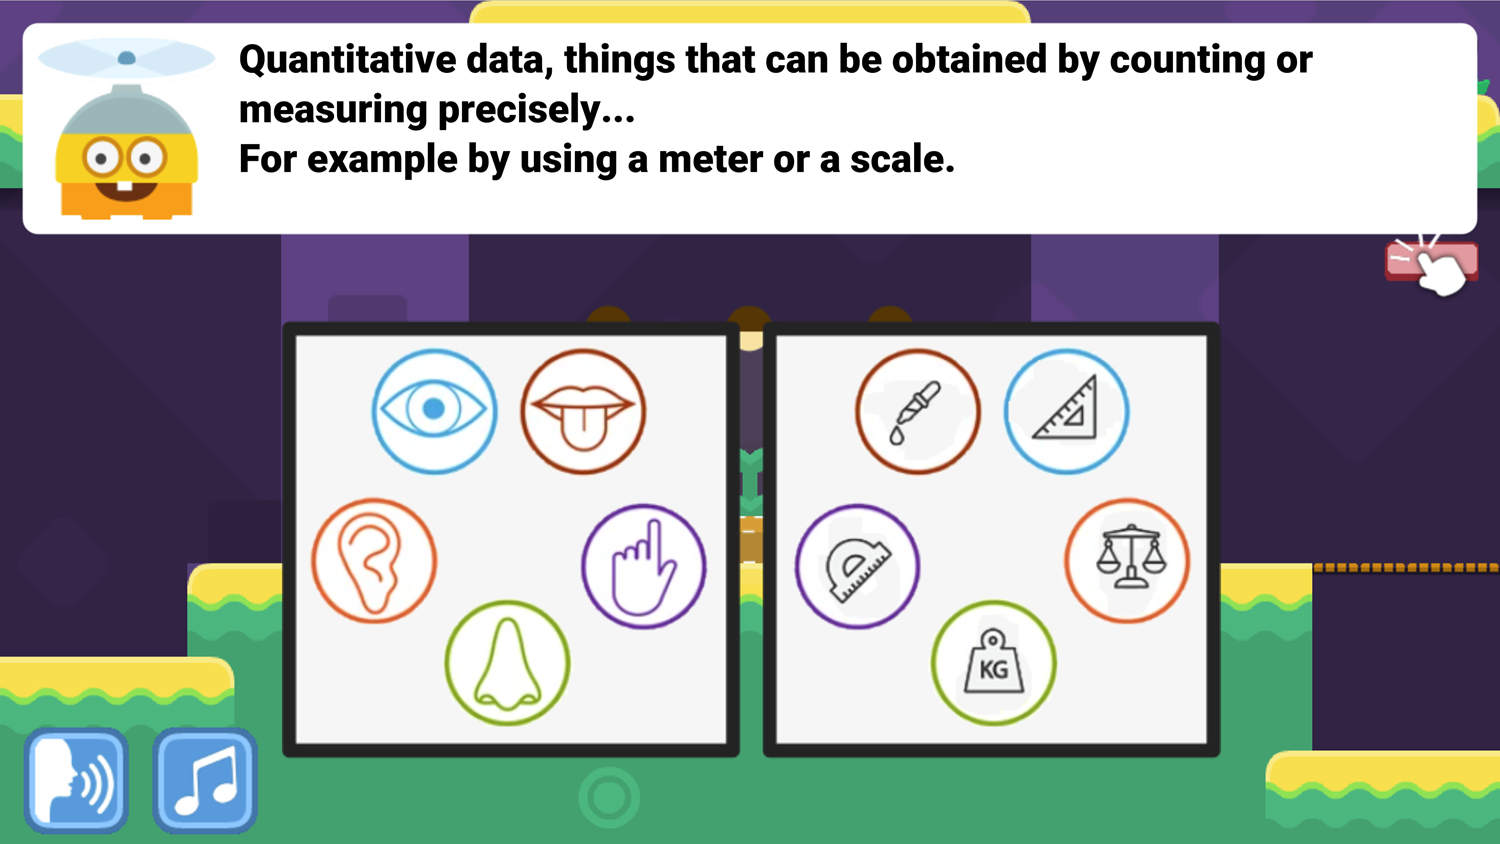 DocDuck Scientific Method Game Quantitative Data Screenshot.